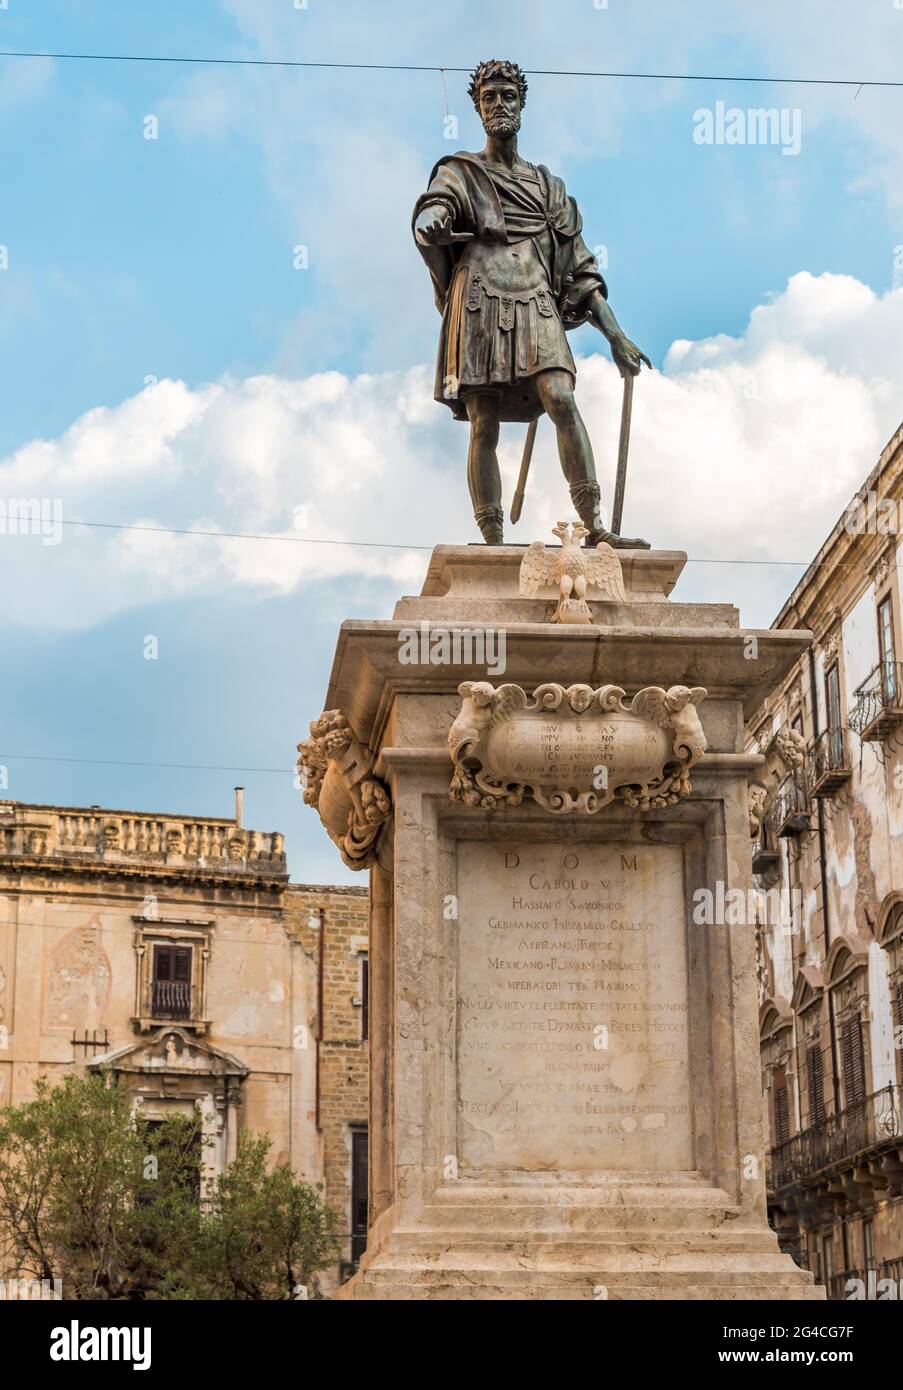 La statue de Charles V est un monument de Palerme situé sur la place Bologni dans le quartier Albergheria, Sicile, Italie Banque D'Images